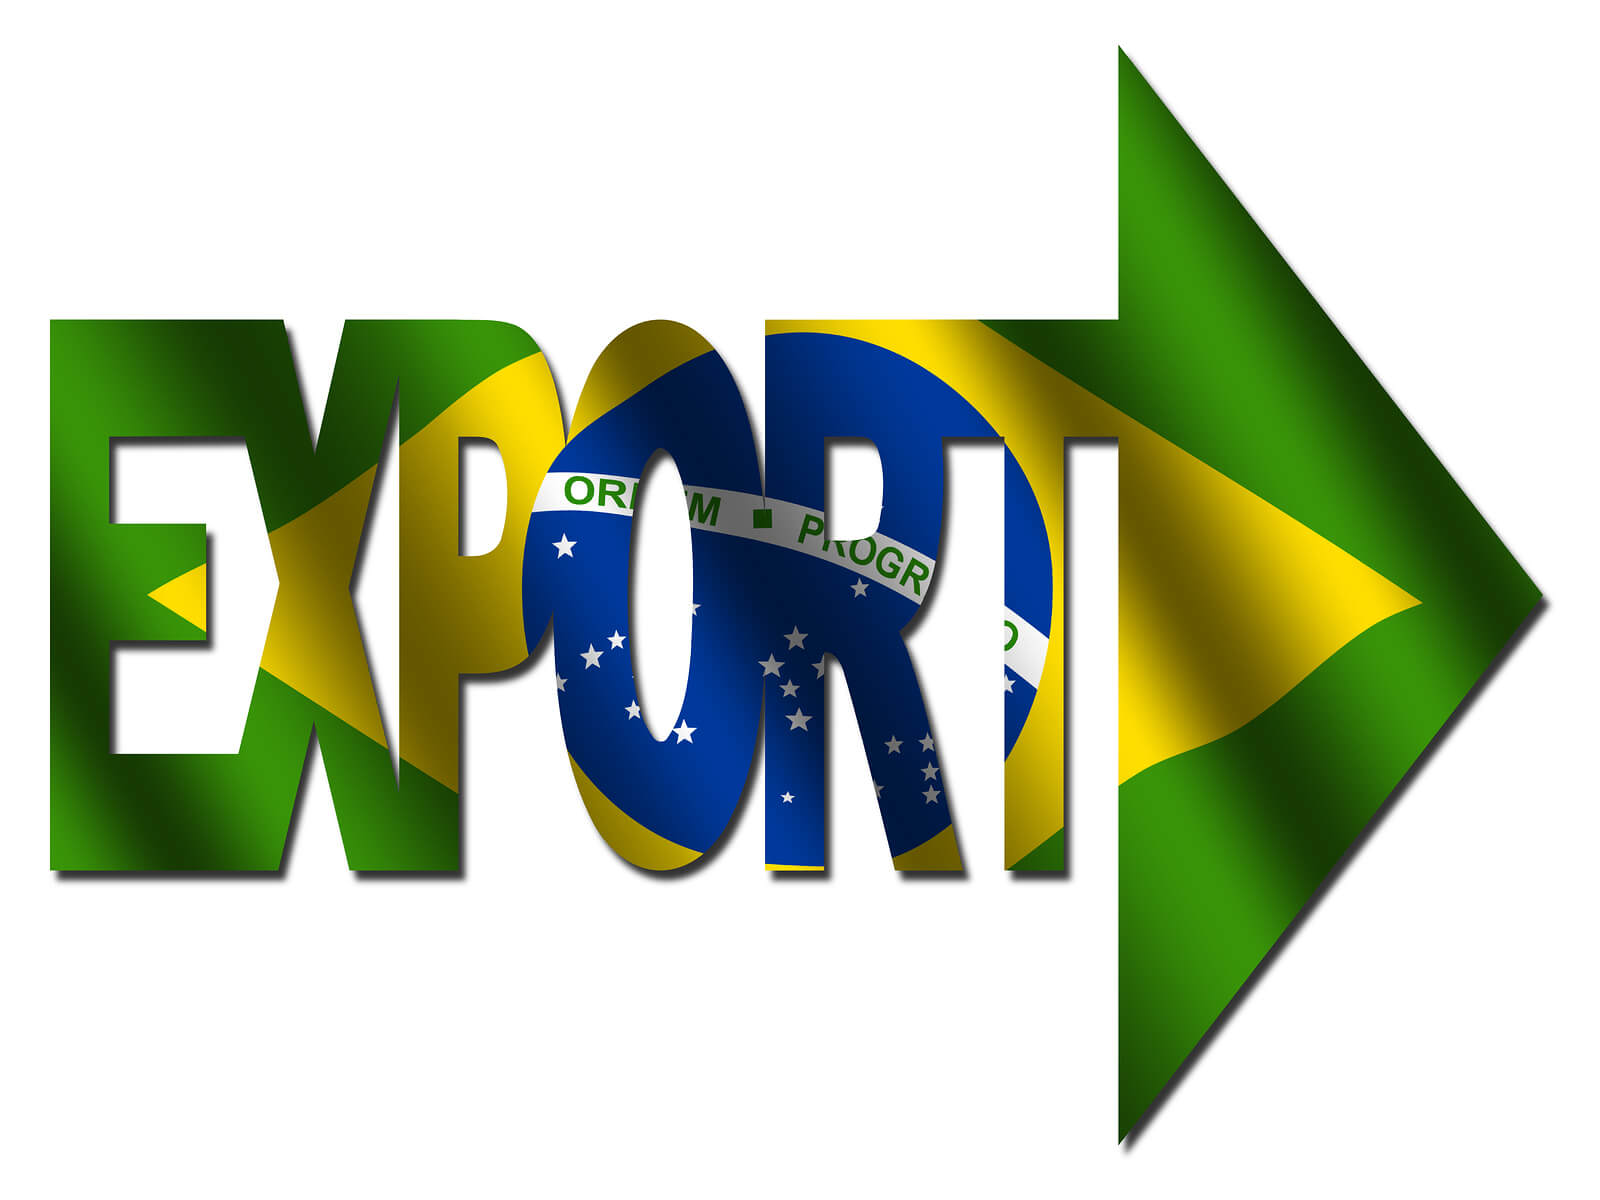 Fórum Nacional Brasil Export em Brasília